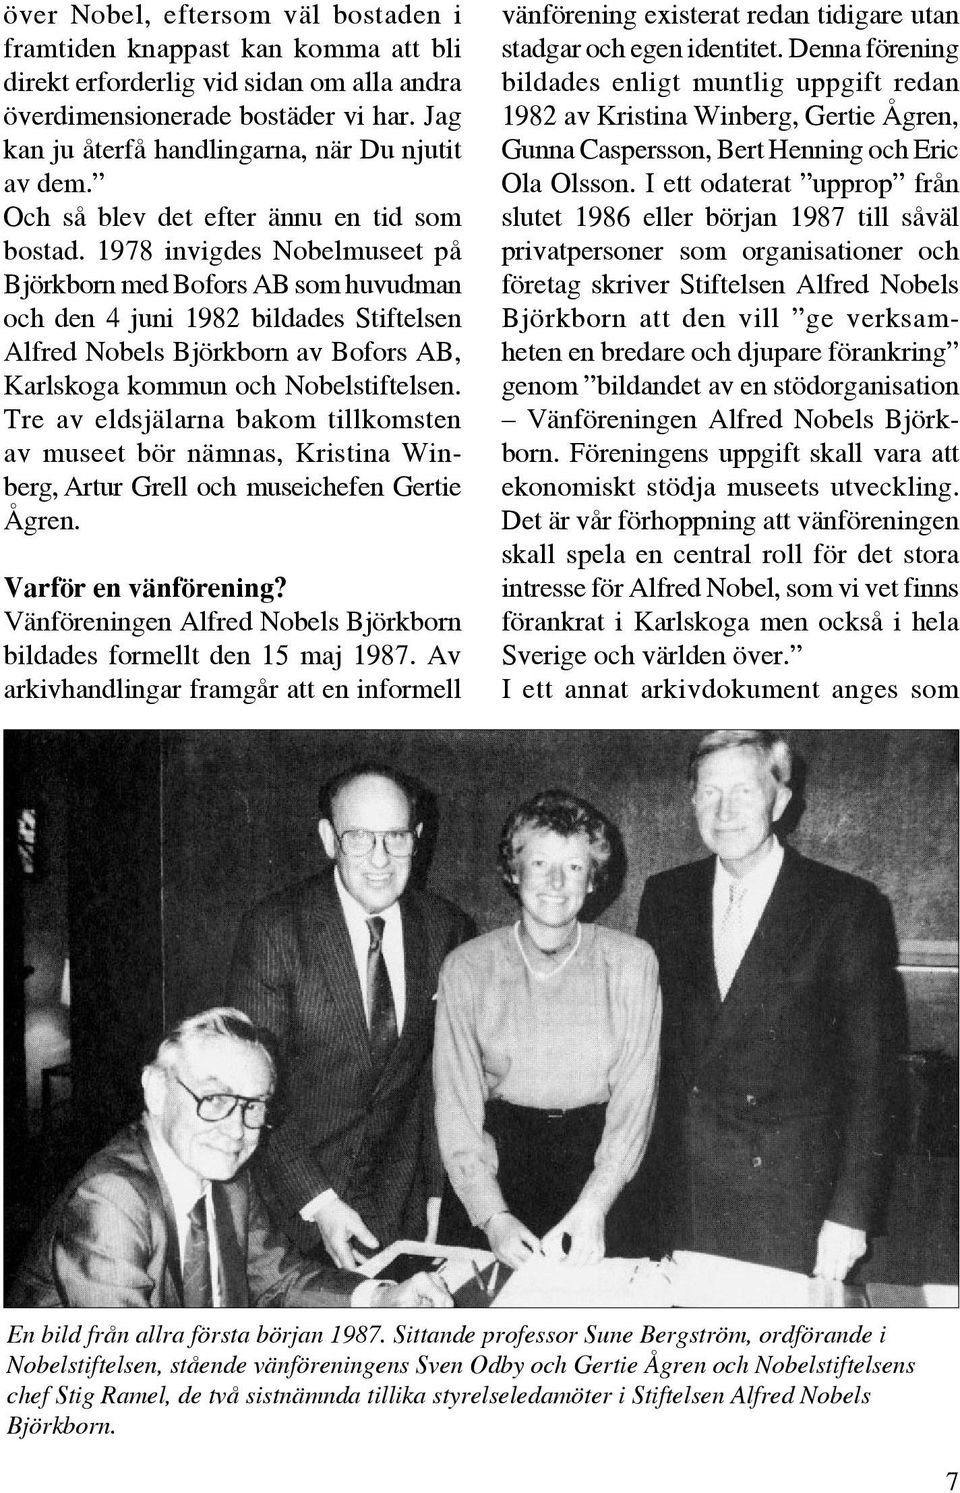 1978 invigdes Nobelmuseet på Björkborn med Bofors AB som huvudman och den 4 juni 1982 bildades Stiftelsen Alfred Nobels Björkborn av Bofors AB, Karlskoga kommun och Nobelstiftelsen.